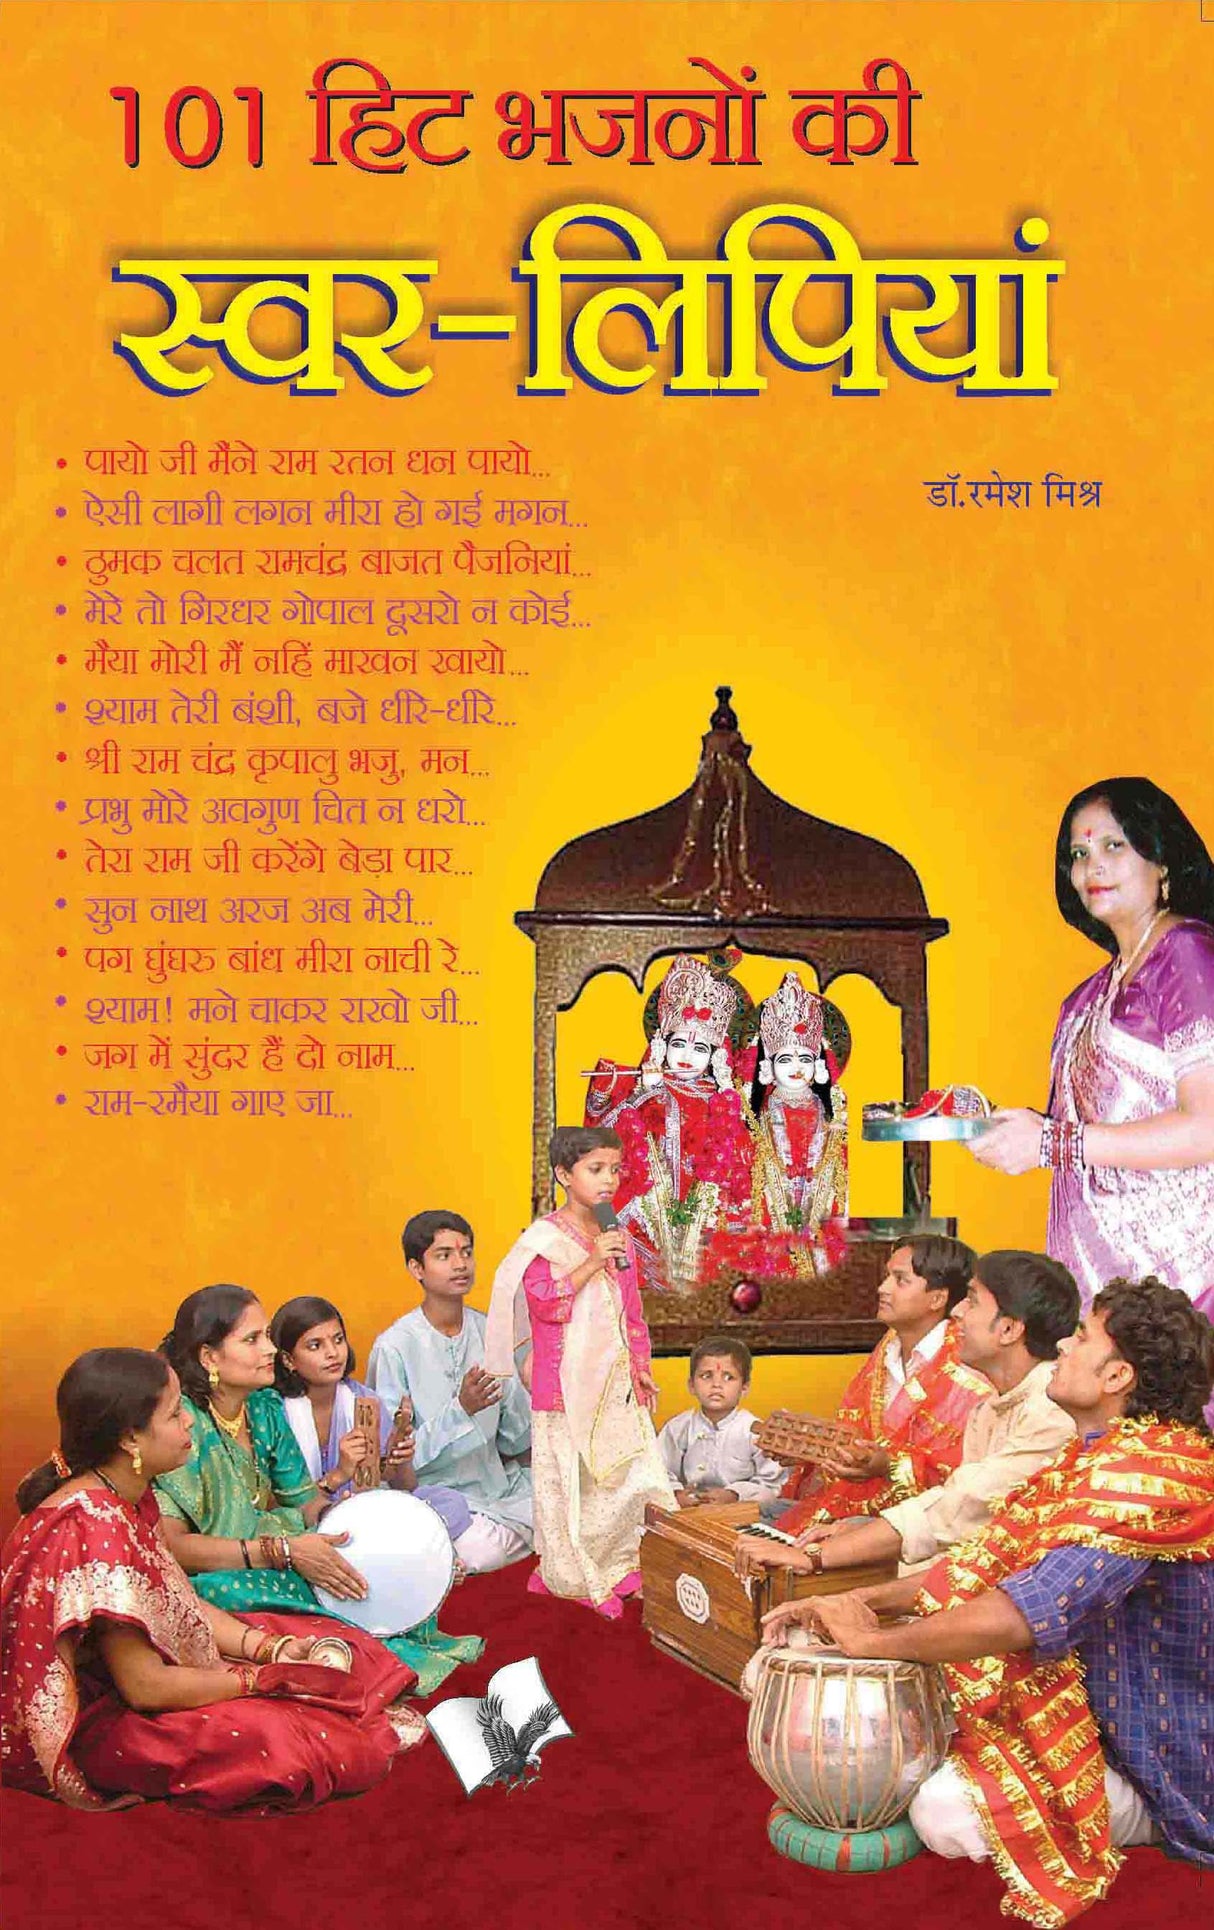 101 Hit Bhajno Ki Swar-Lipiya: Lyrics of popular devotional songs in Hindi